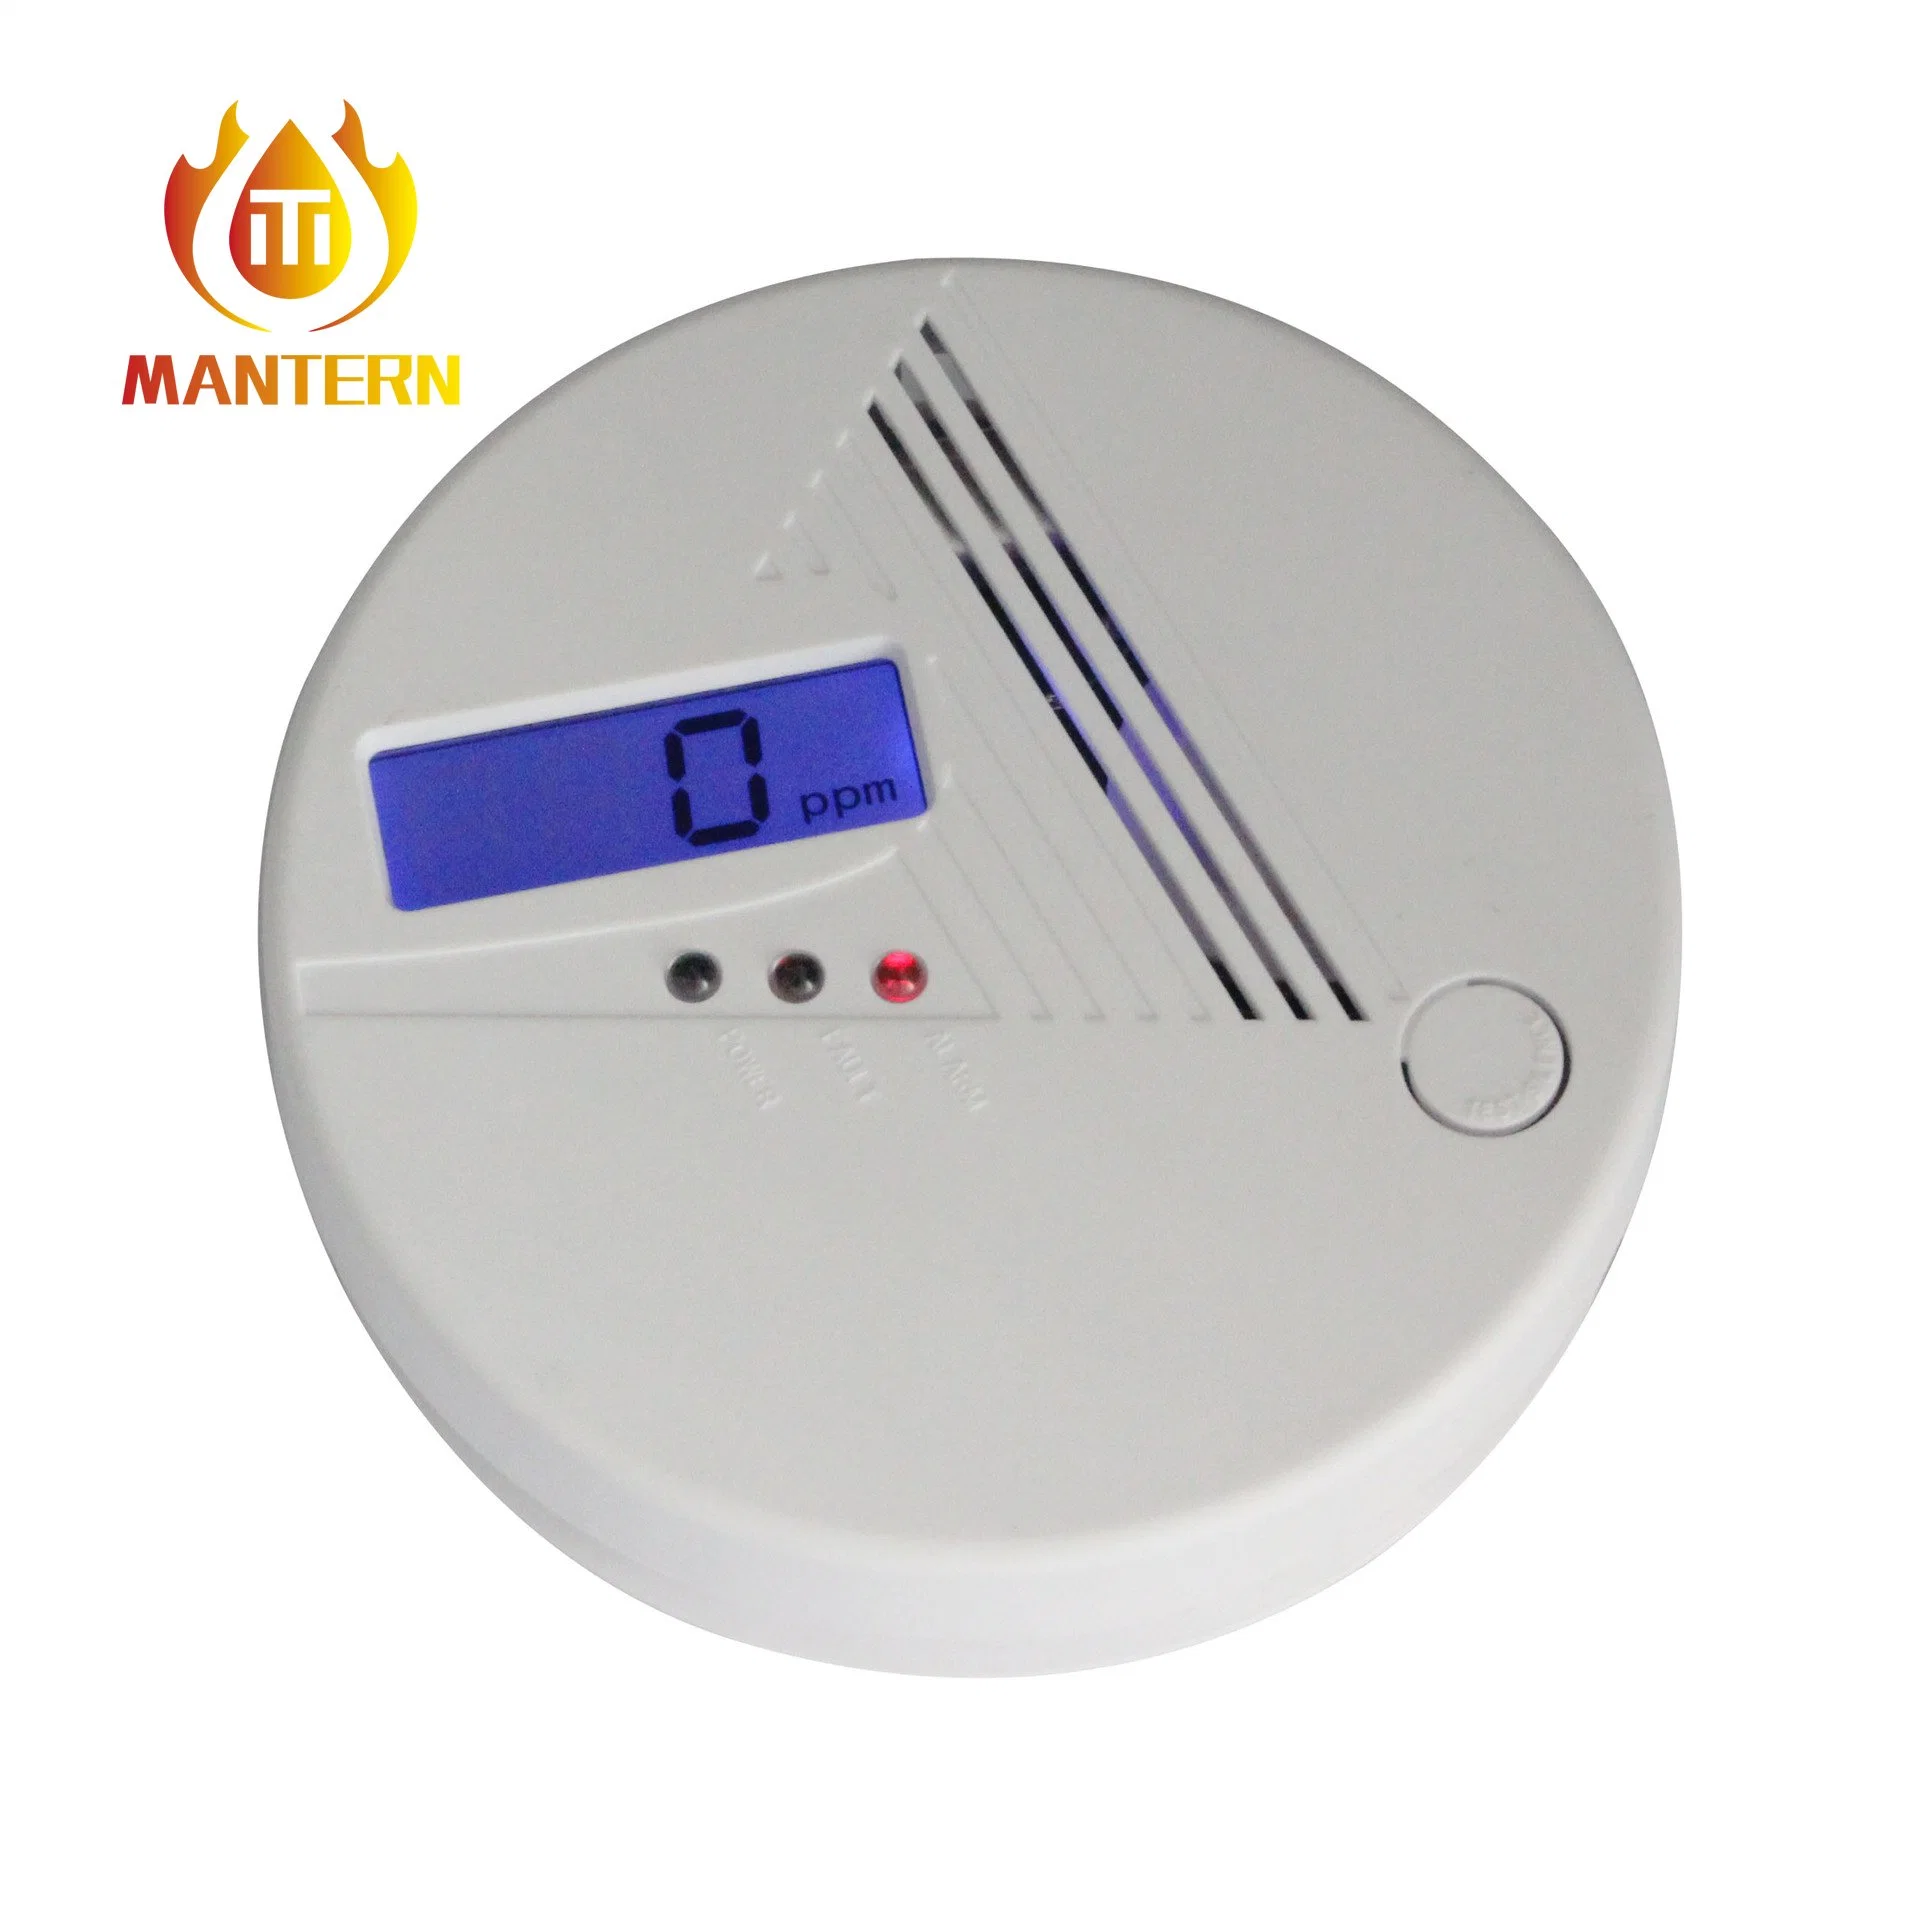 Pantalla digital Detector de fugas de gas Co del sensor de monóxido de carbono dependiente 85dB alarma interior